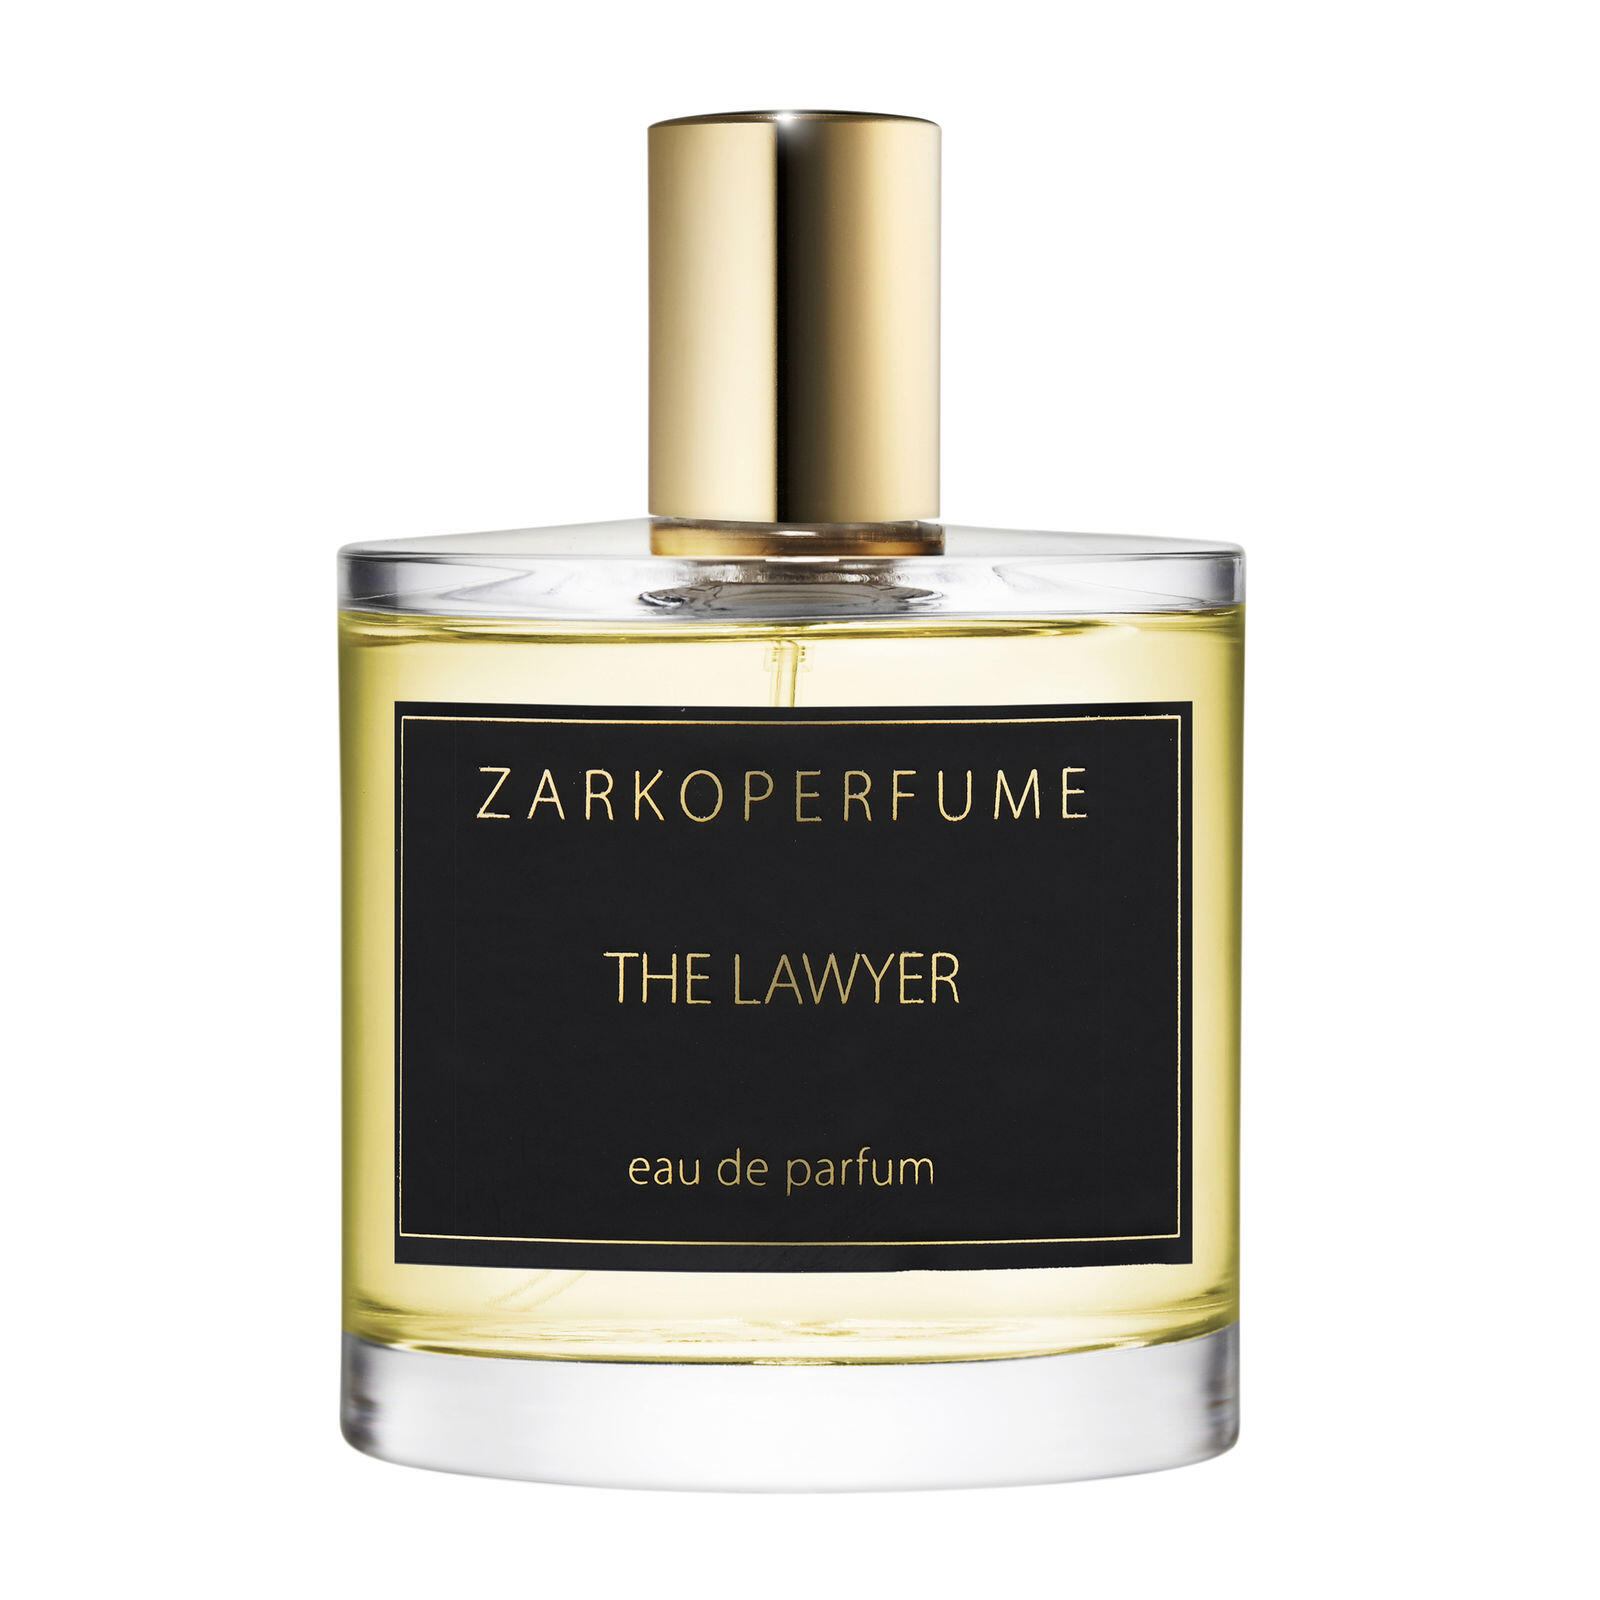 Billede af Zarkoperfume The Lawyer, 100 ml.